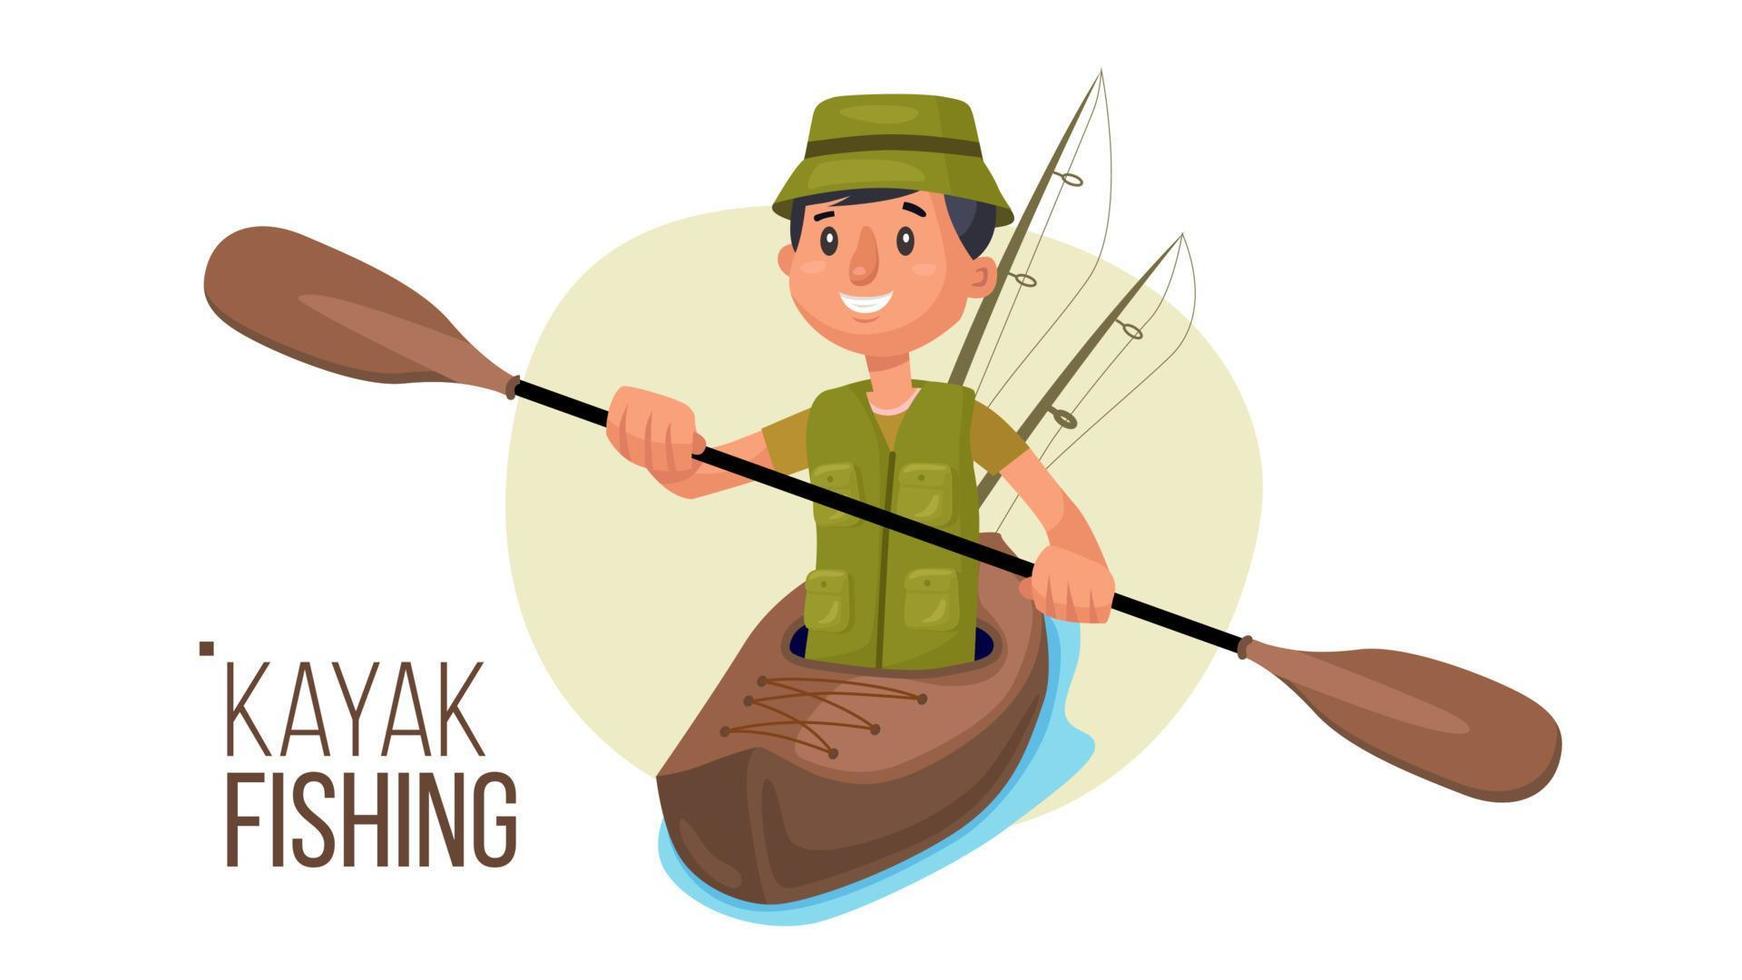 vector de kayak remando. pesca en kayak de verano. pescadores aislados ilustración de personaje de dibujos animados plana